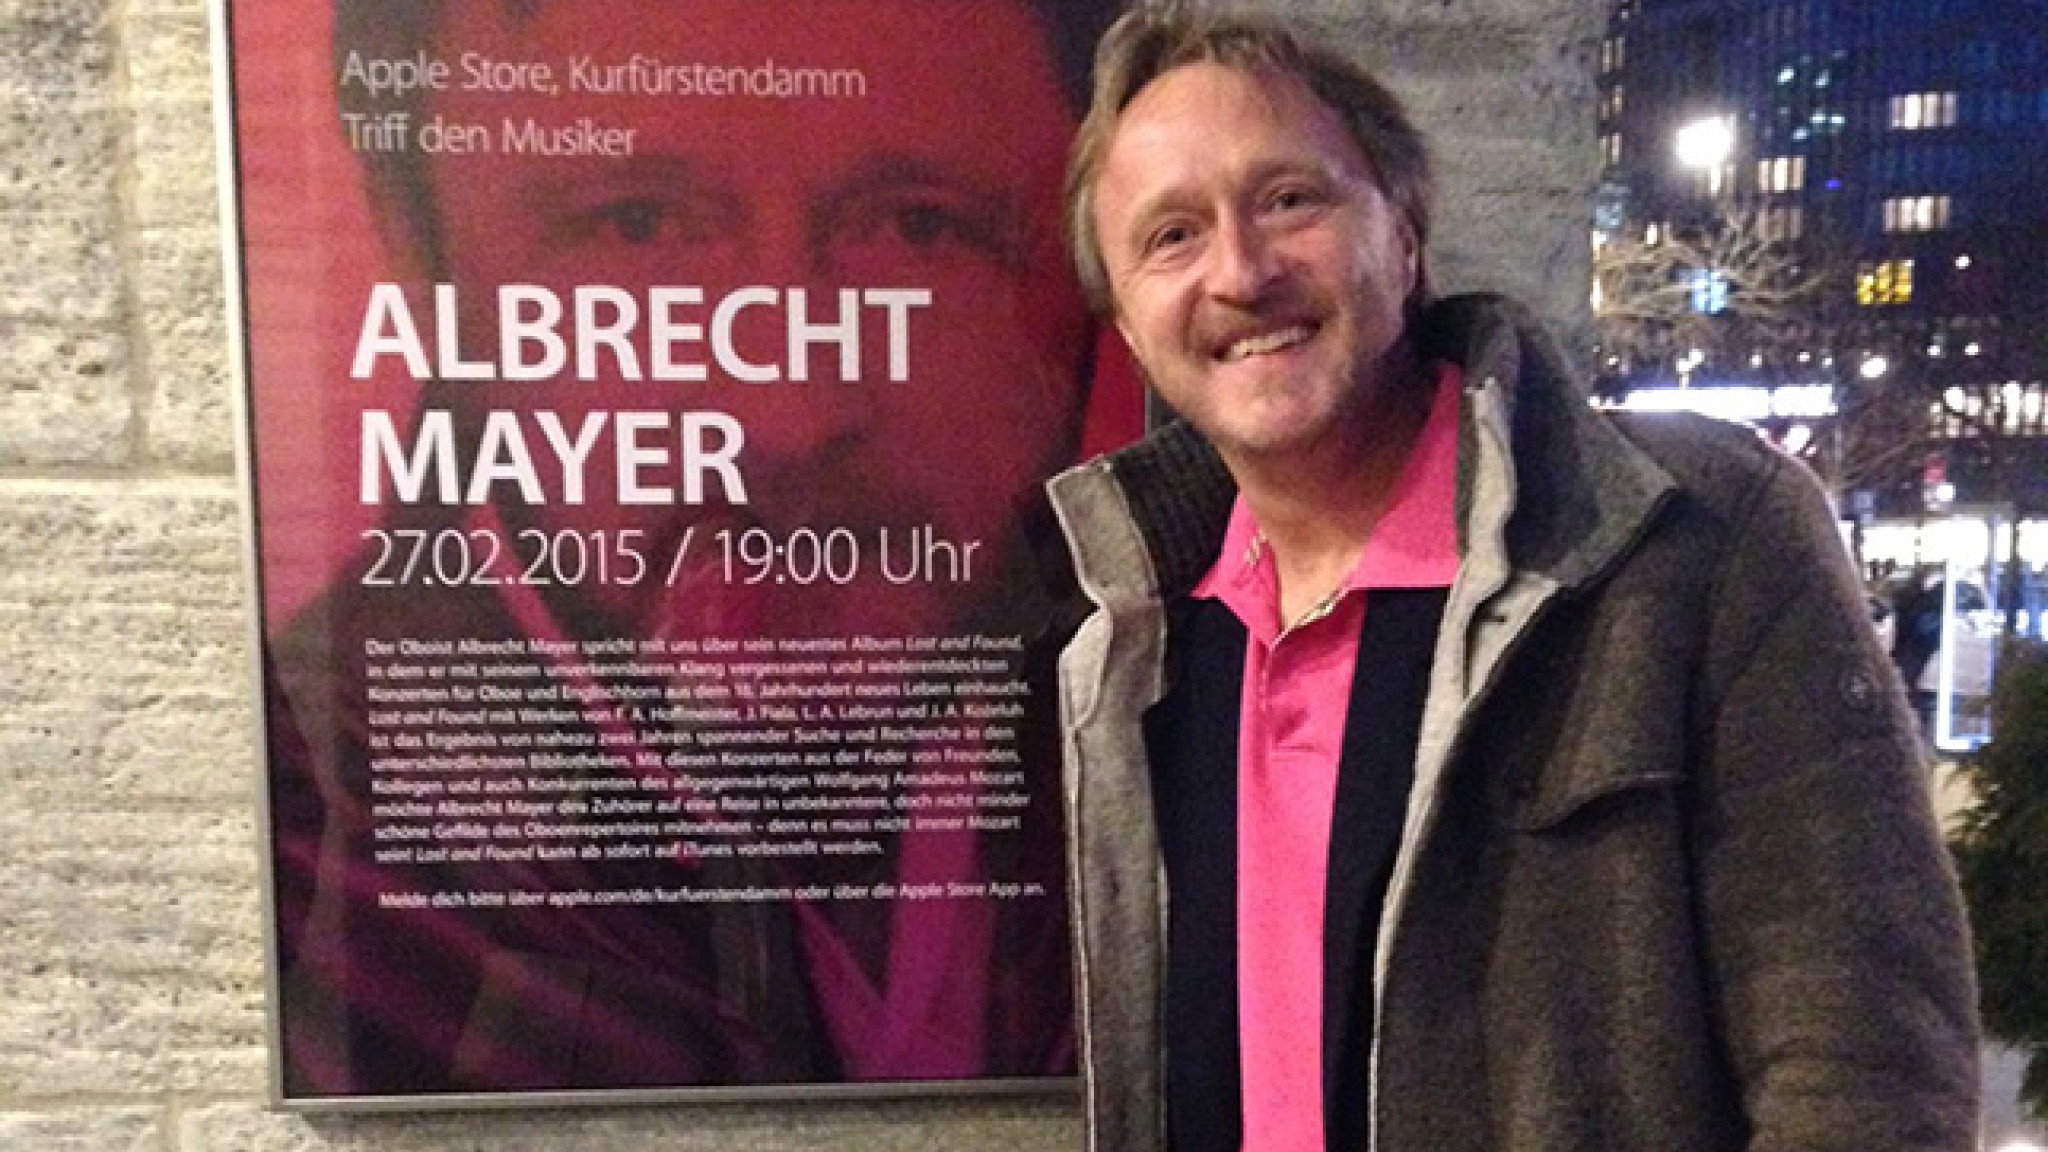 Albrecht Mayer